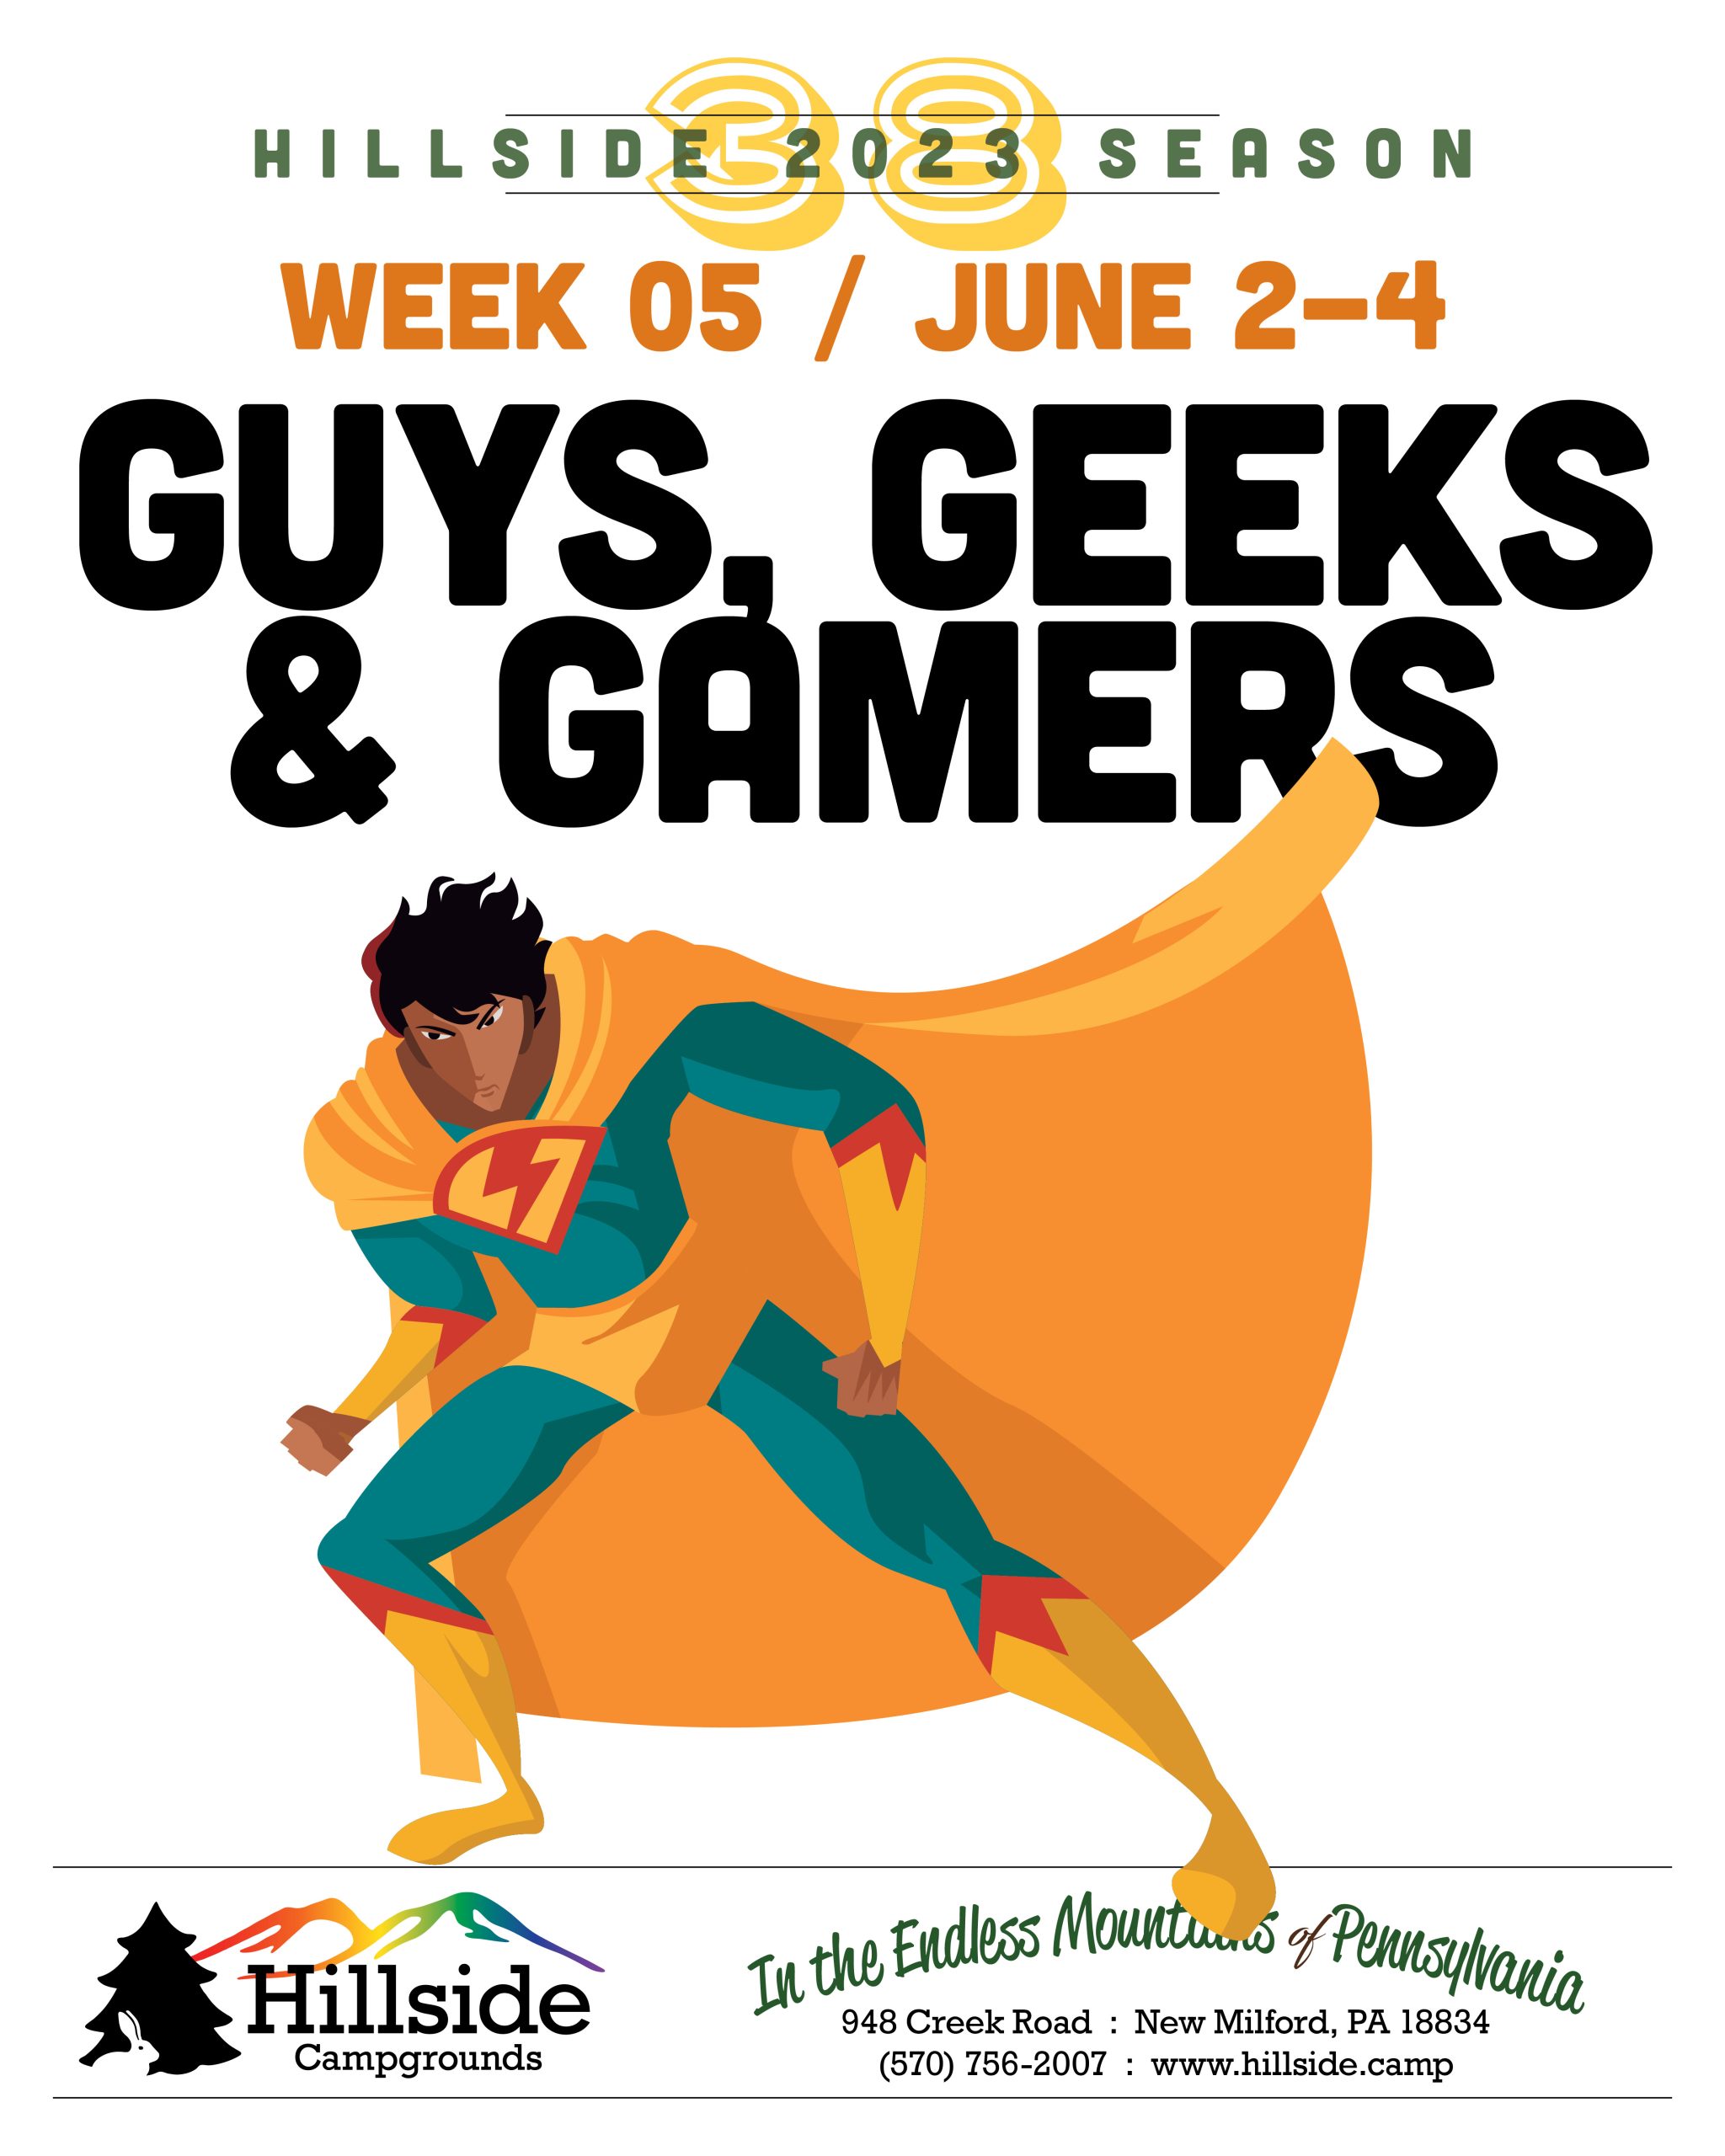 2023 weekend 05 geeks gamers